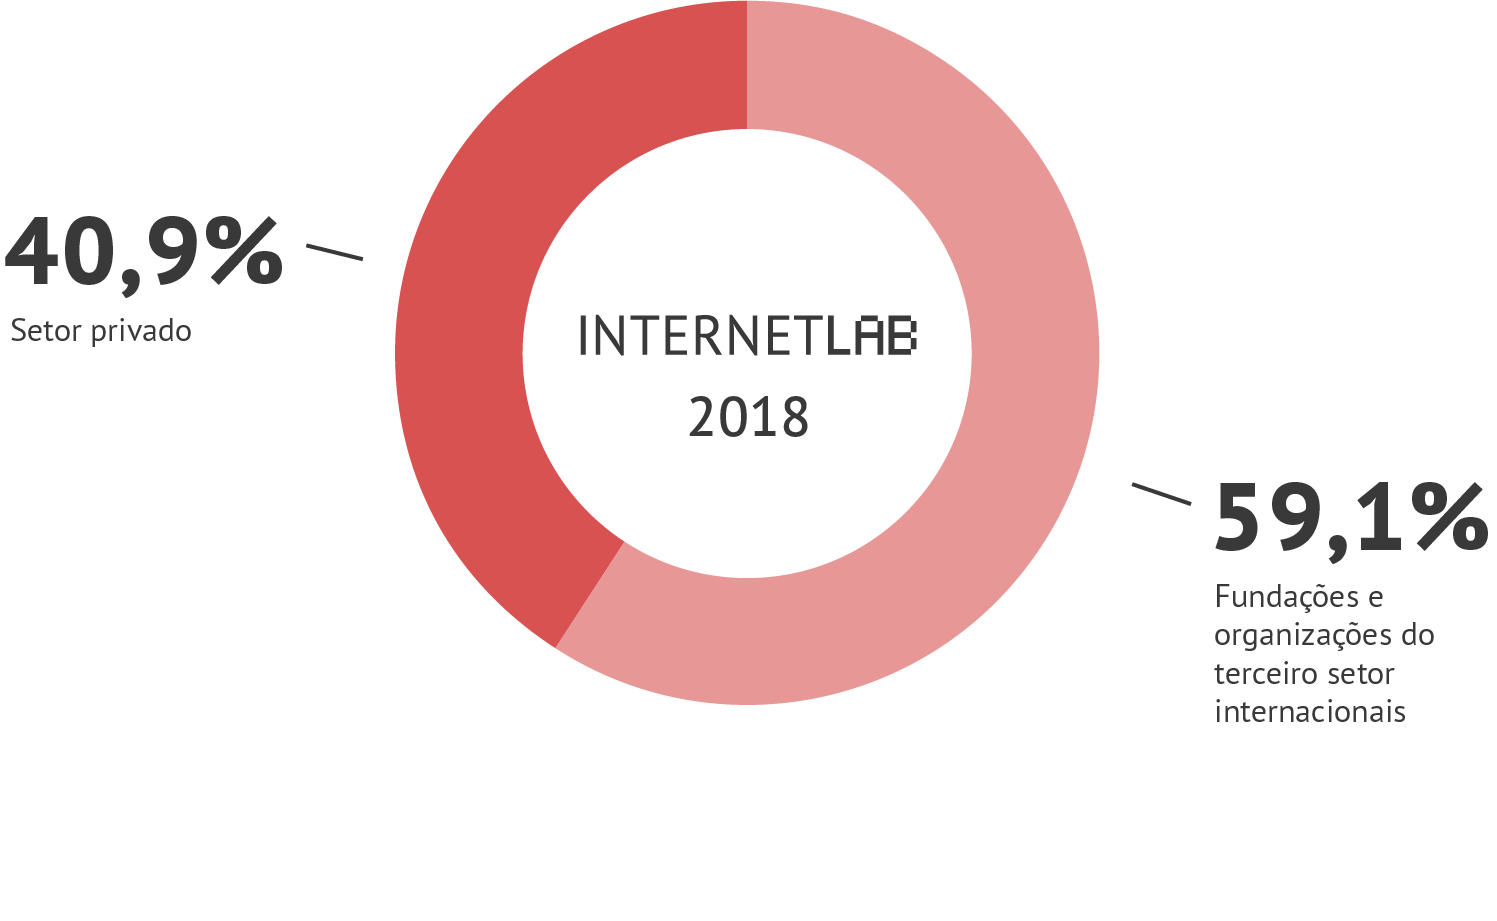 Gráfico em pizza com as informações de fontes de financiamento do InternetLab em 2018. Sendo 59,1% vindo de fundações e organizações do terceiro setor internacionais e 40,9% do setor privado.